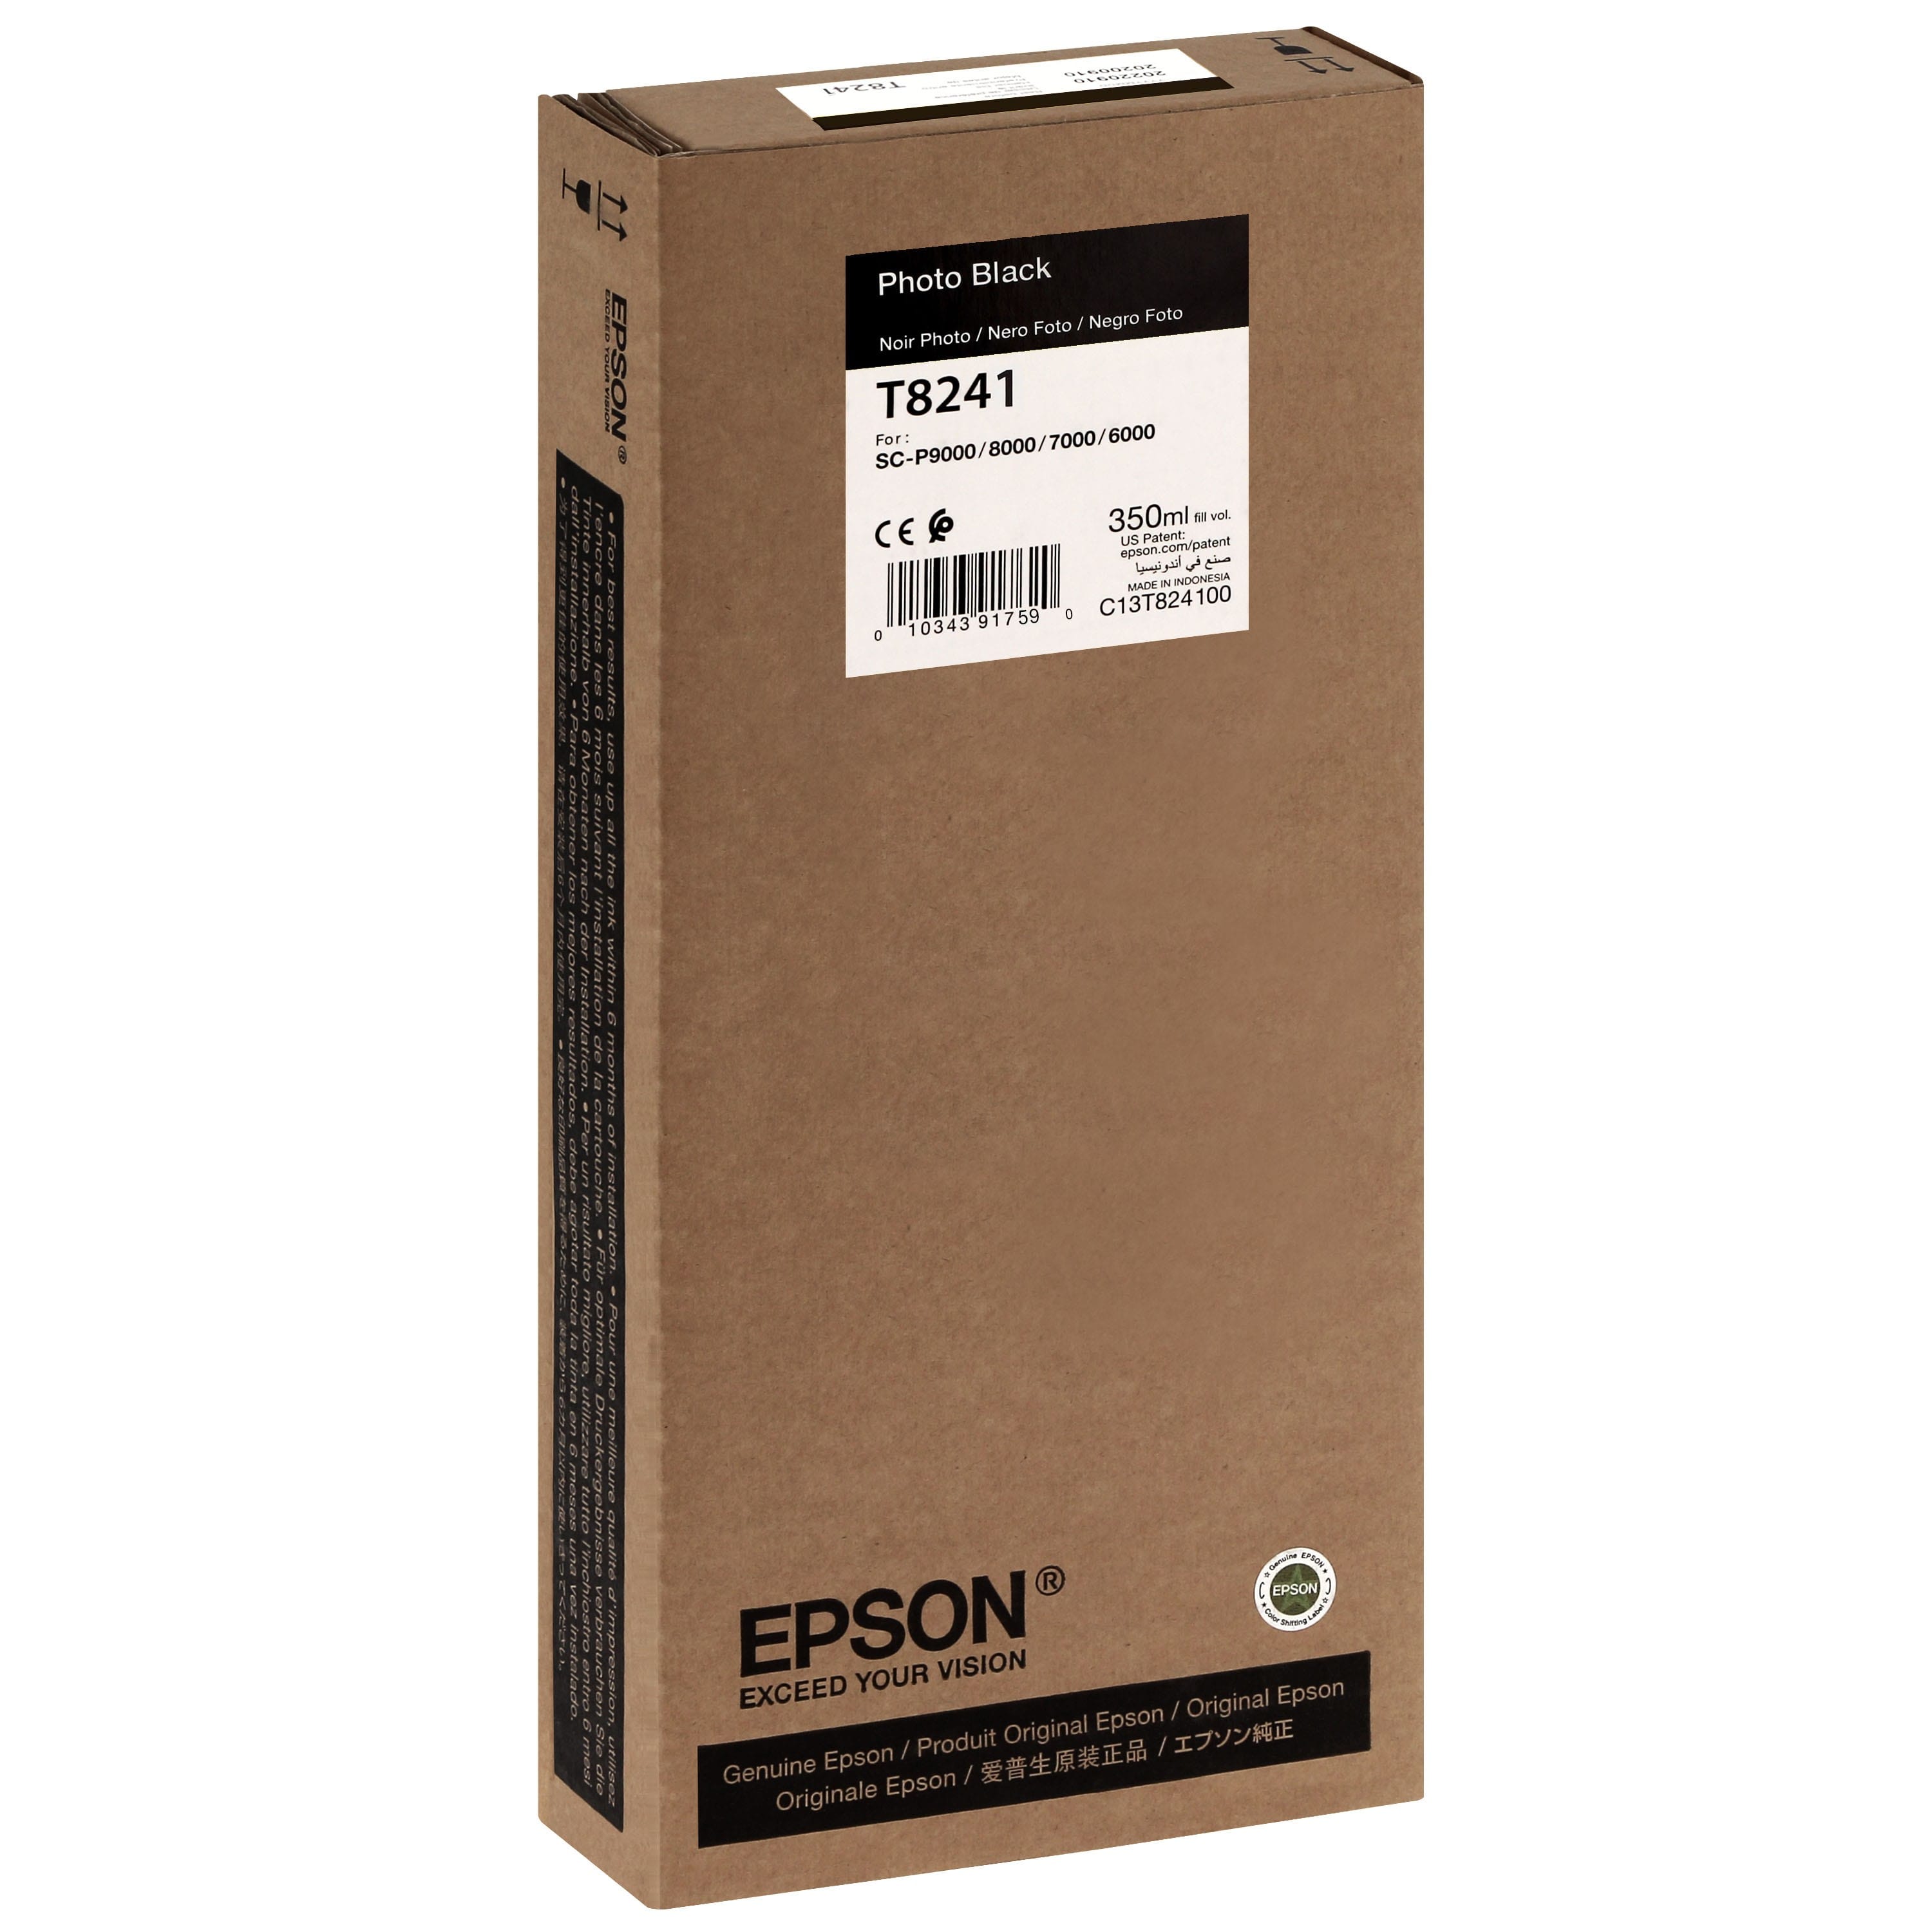 EPSON - Cartouche d'encre traceur T8241 Pour imprimante SC-P6000/7000/7000V/8000/9000/9000V Noir Photo - 350ml